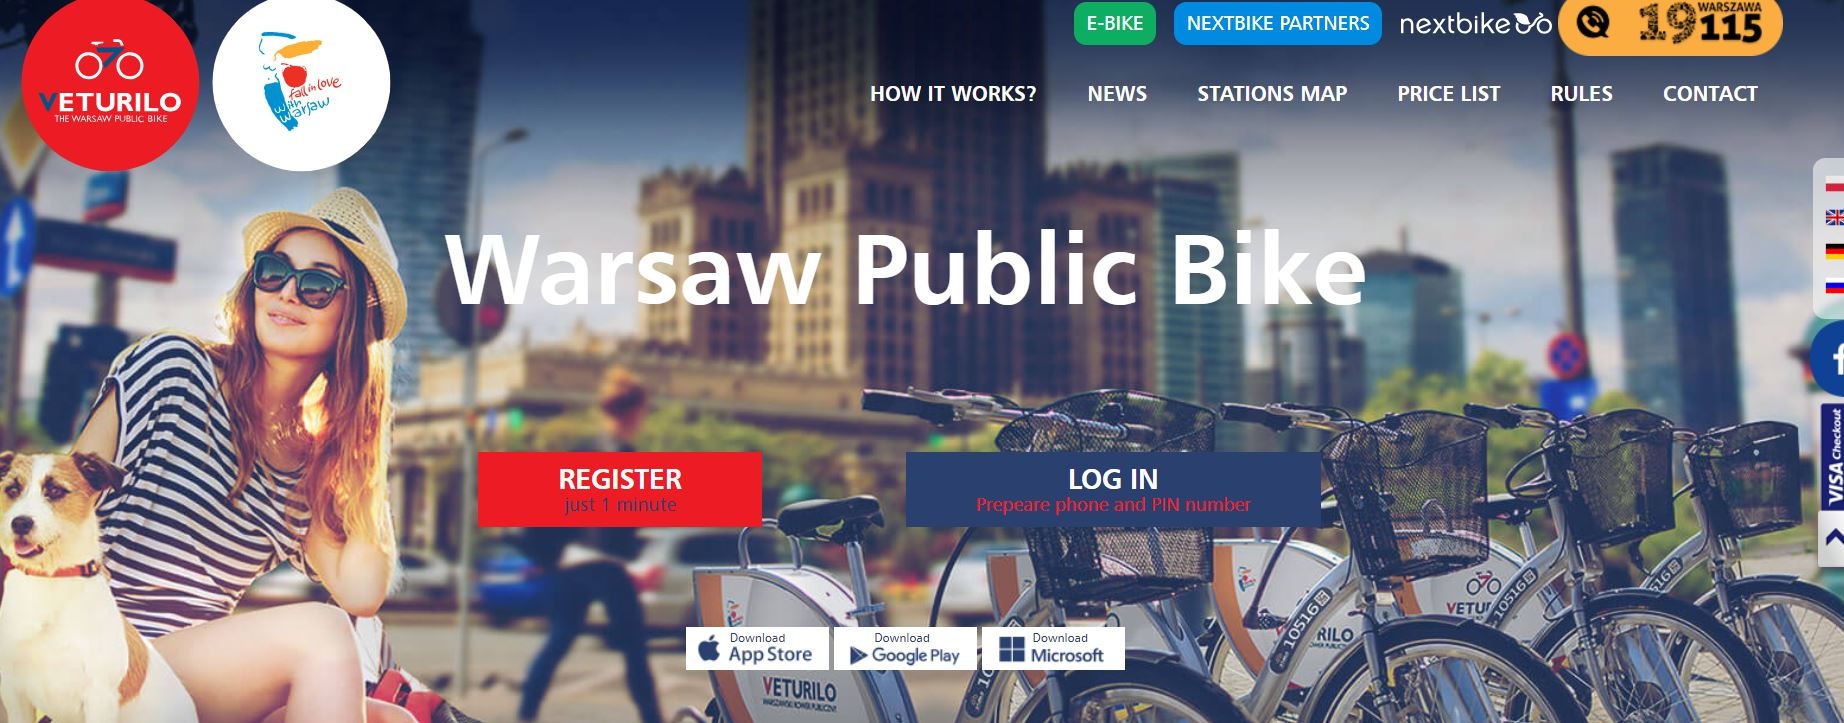 波蘭華沙公共腳踏車Warsaw public bike｜Veturilo系統設定、APP註冊、租借腳踏車遊華沙～